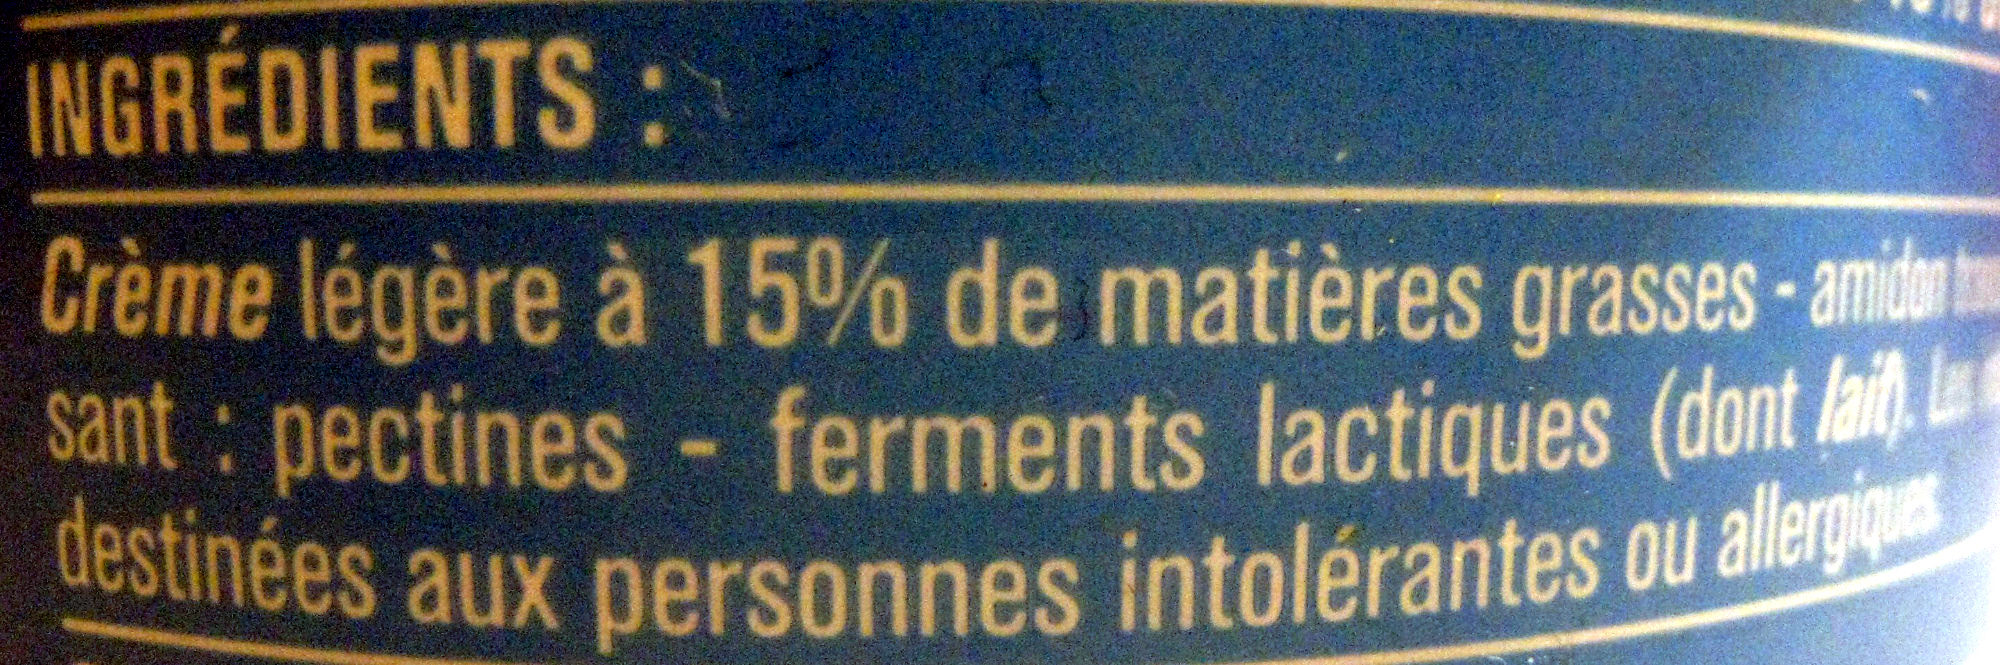 Crème fraîche légère 15 % de Mat. gr. épaisse - Ingredients - fr